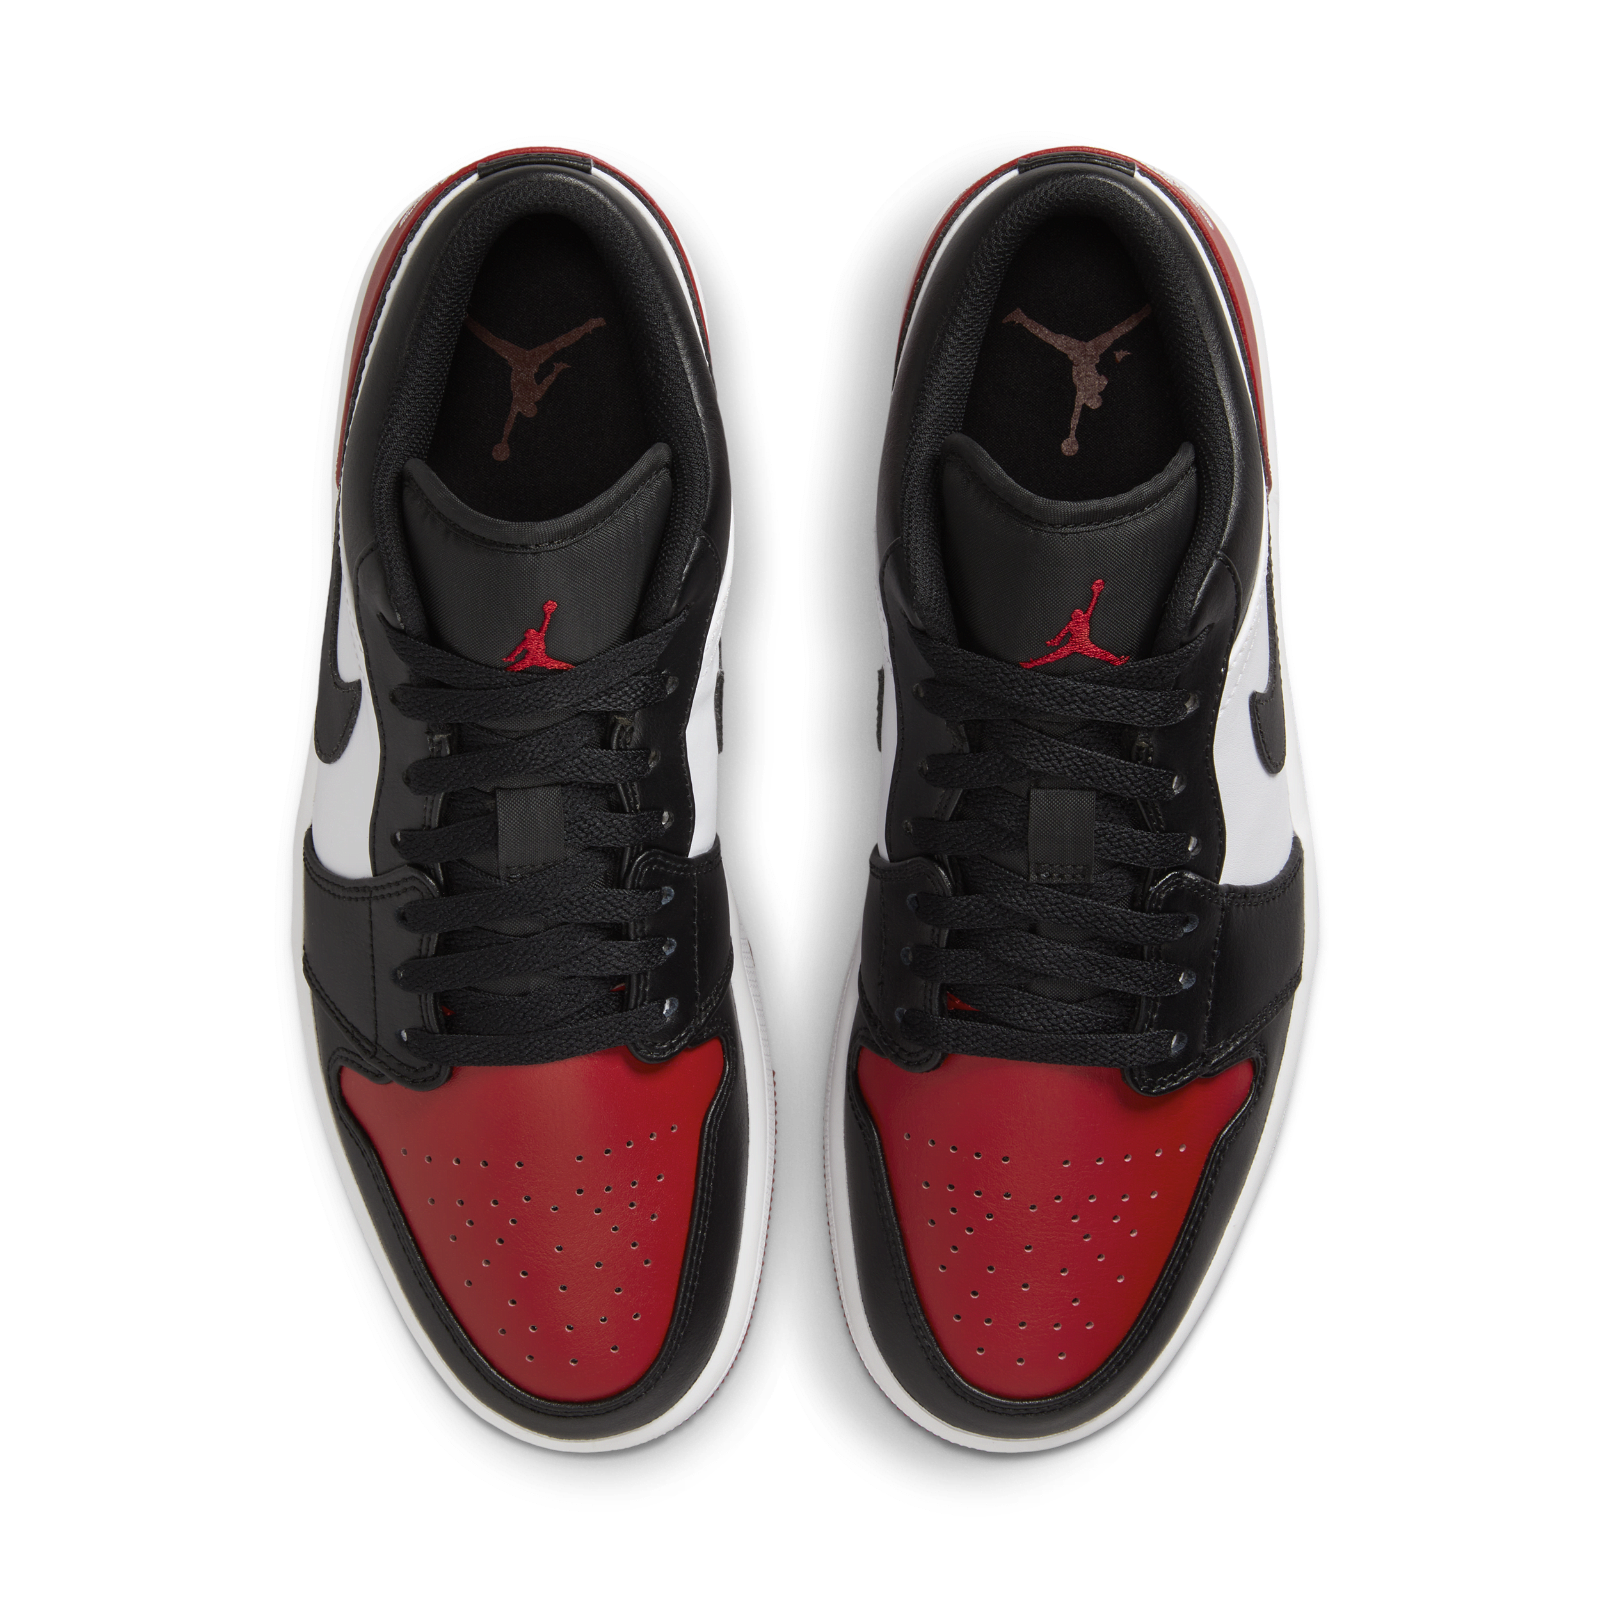 Air Jordan 1 Low "Bred Toe 2.0"